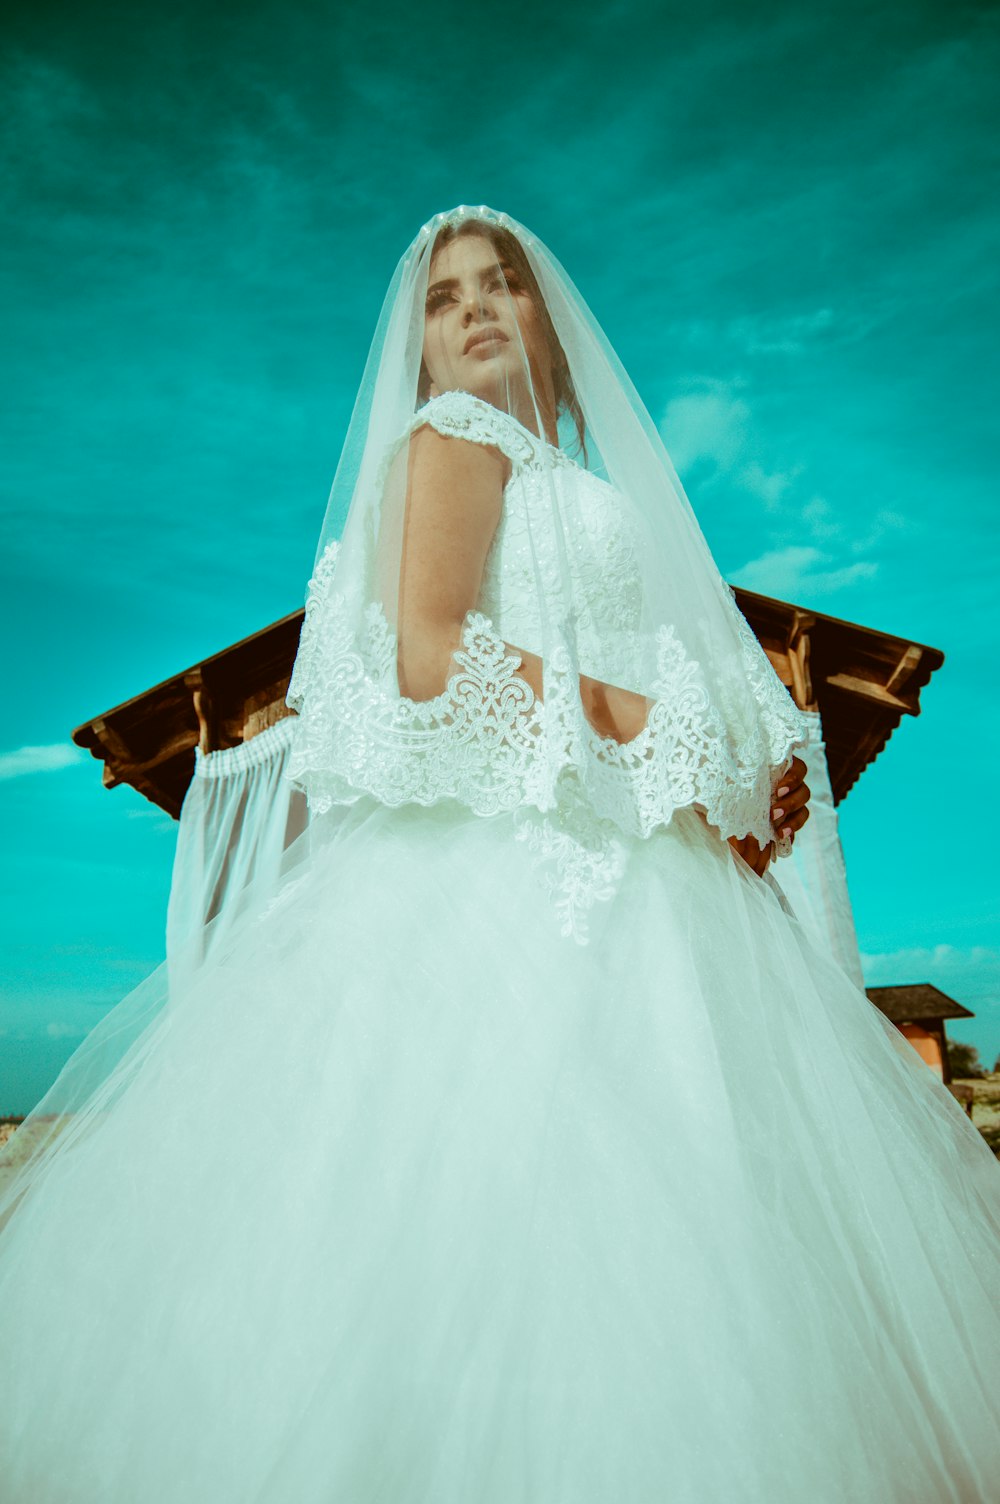 Low-Angle-Fotografie einer Frau im weißen Hochzeitskleid in der Nähe eines braunen Schuppens während des Tages